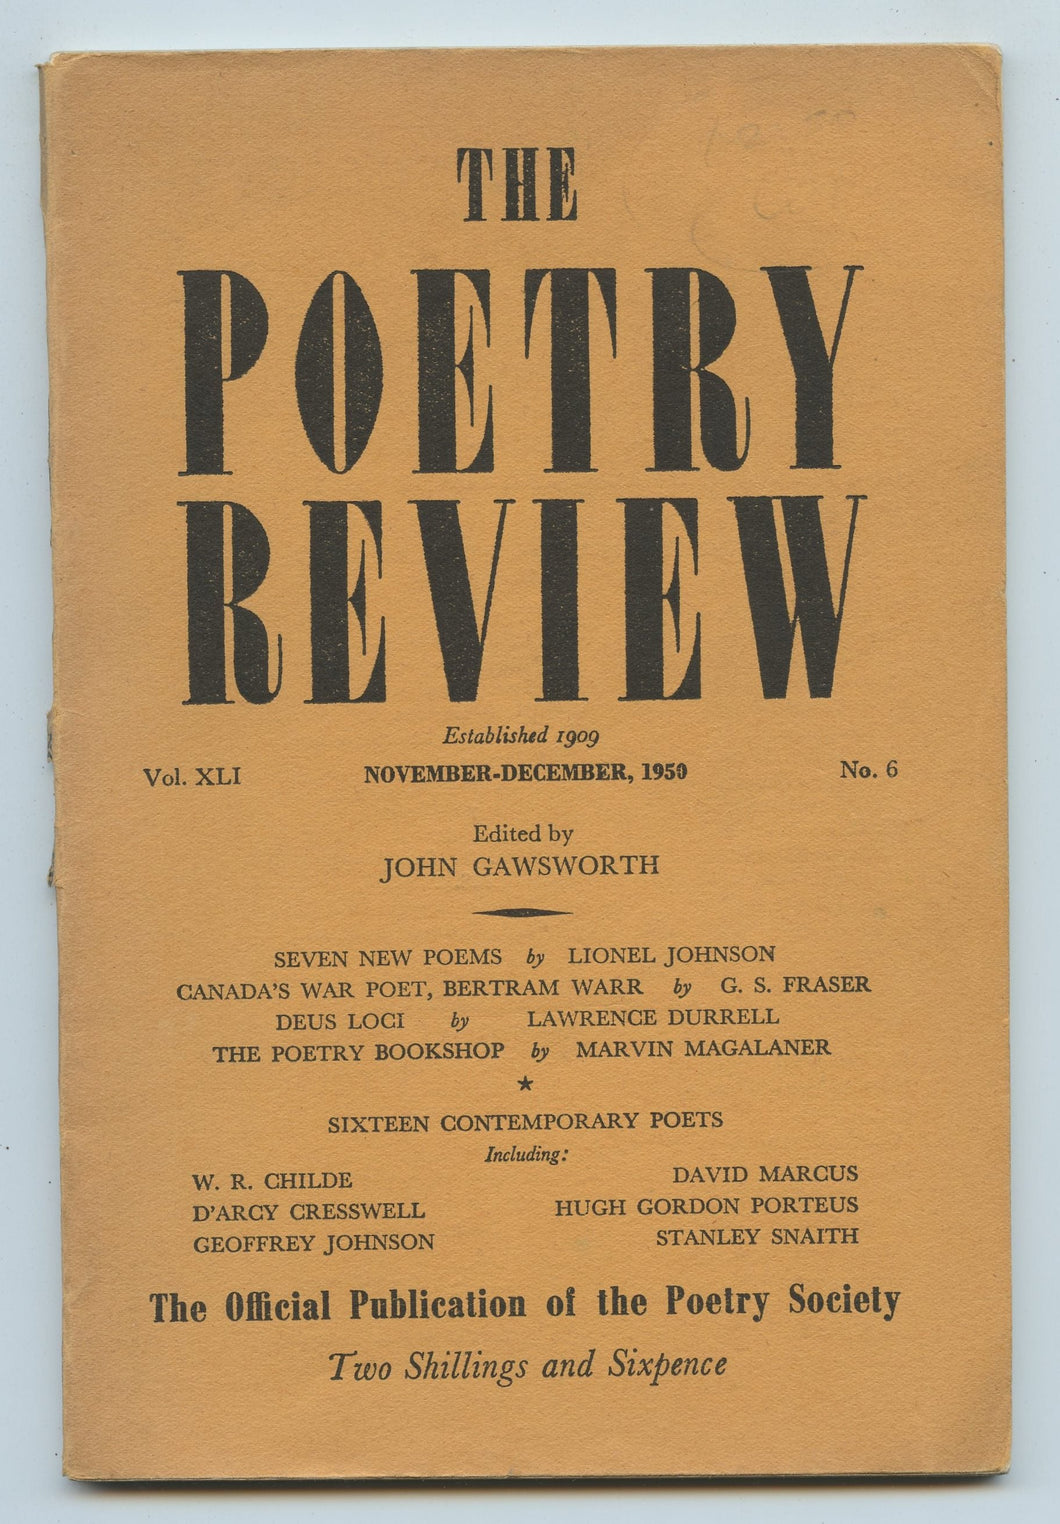 The Poetry Review, Nov.-Dec. 1950